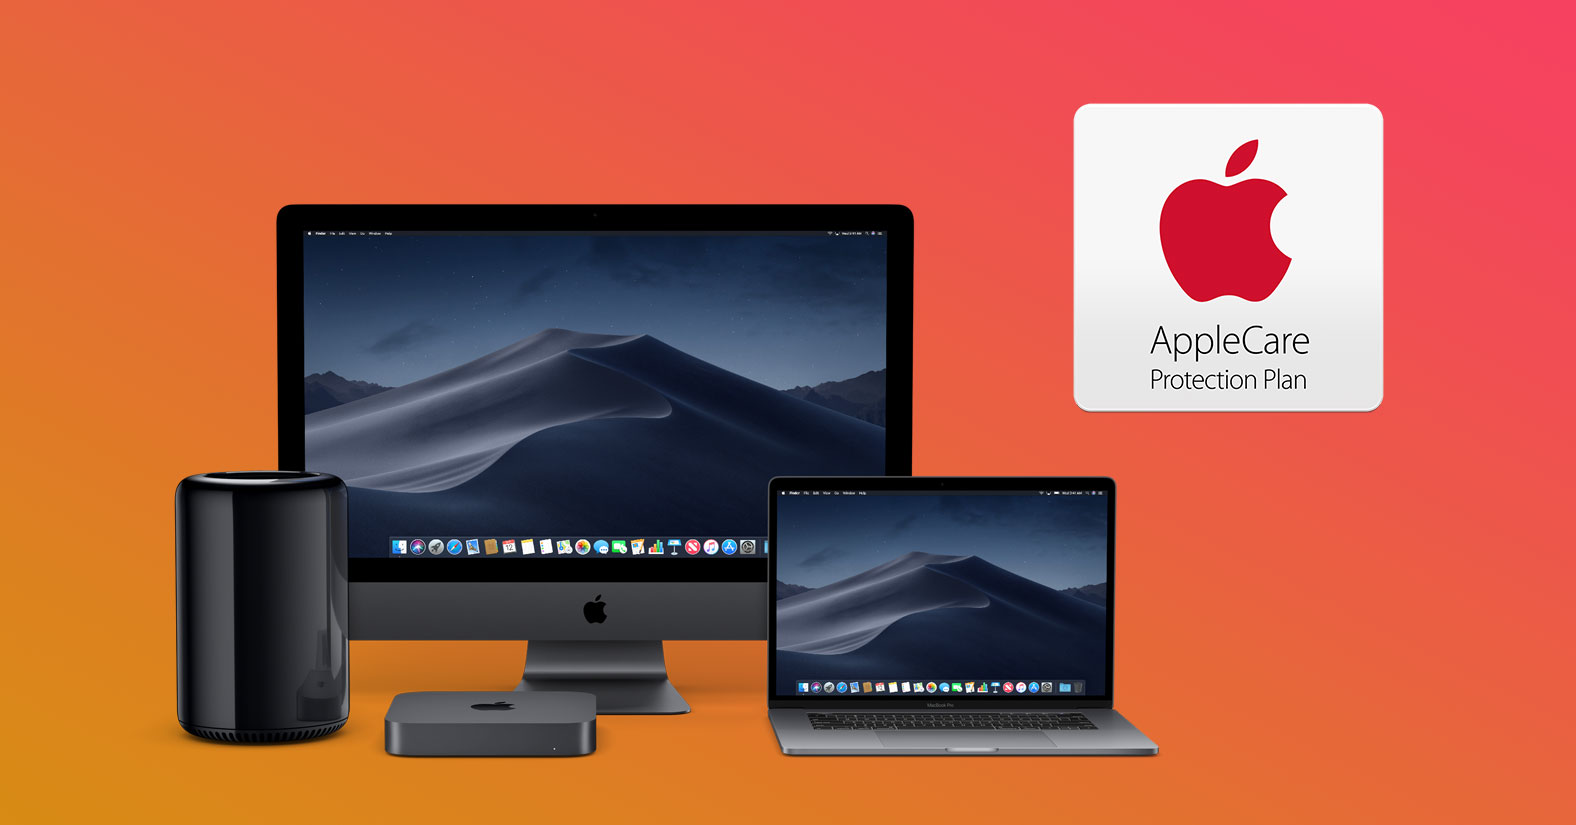 Nhắc lại: MacBook được bảo hành toàn cầu, bảo hành cửa hàng không phải là AppleCare